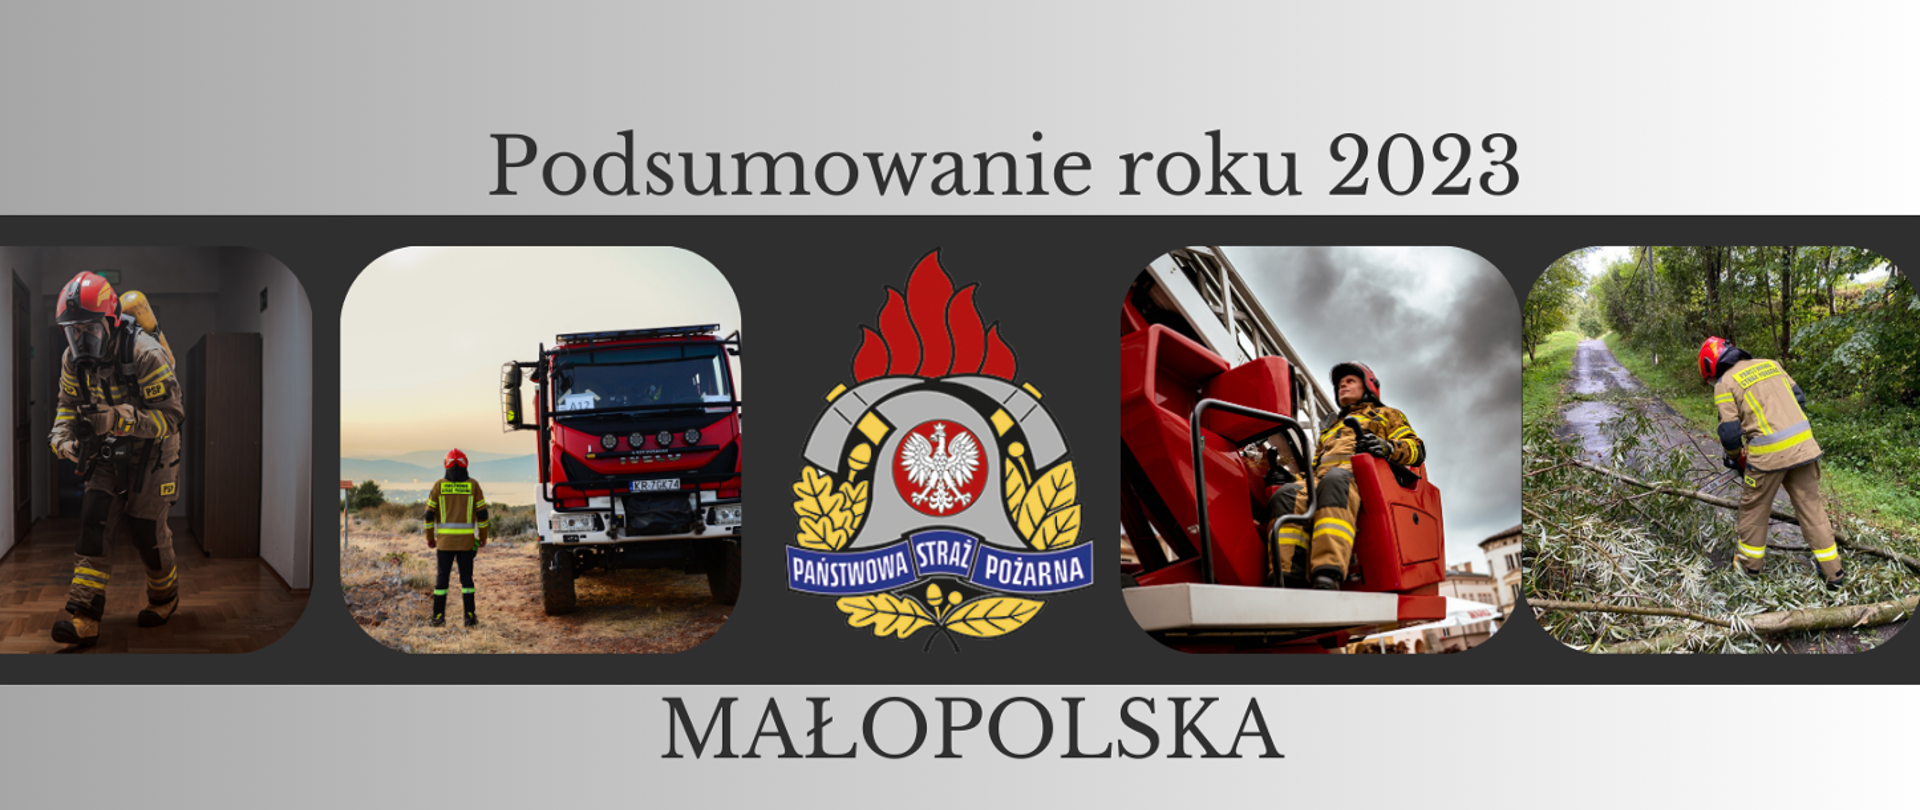 Zdjęcie przedstawia strażaków w działaniach ratowniczych podczas usuwania powalonego drzewa operatora podnośnika hydraulicznego, samochód pożarniczy koloru czerwonego, strażaka w ubraniu specjalnym z aparatem powietrznym na plecach, logo Państwowej Straży Pożarnej i napis Podsumowanie roku 2023 Małopolska